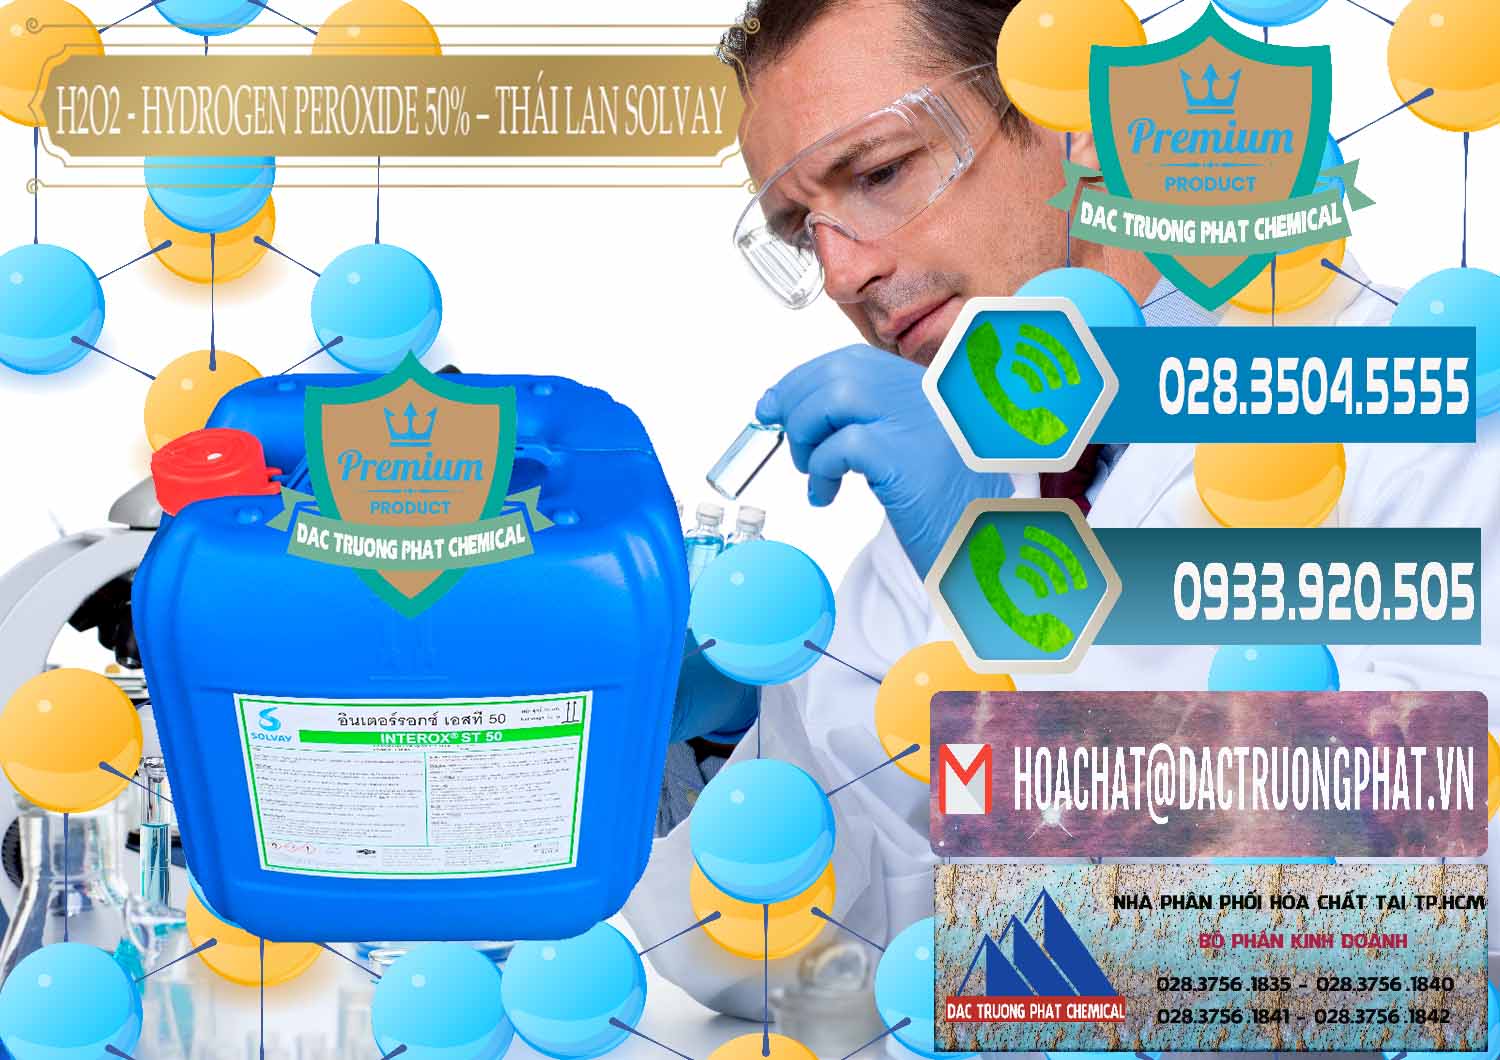 Nhà cung ứng & bán H2O2 - Hydrogen Peroxide 50% Thái Lan Solvay - 0068 - Nơi chuyên phân phối - kinh doanh hóa chất tại TP.HCM - congtyhoachat.net